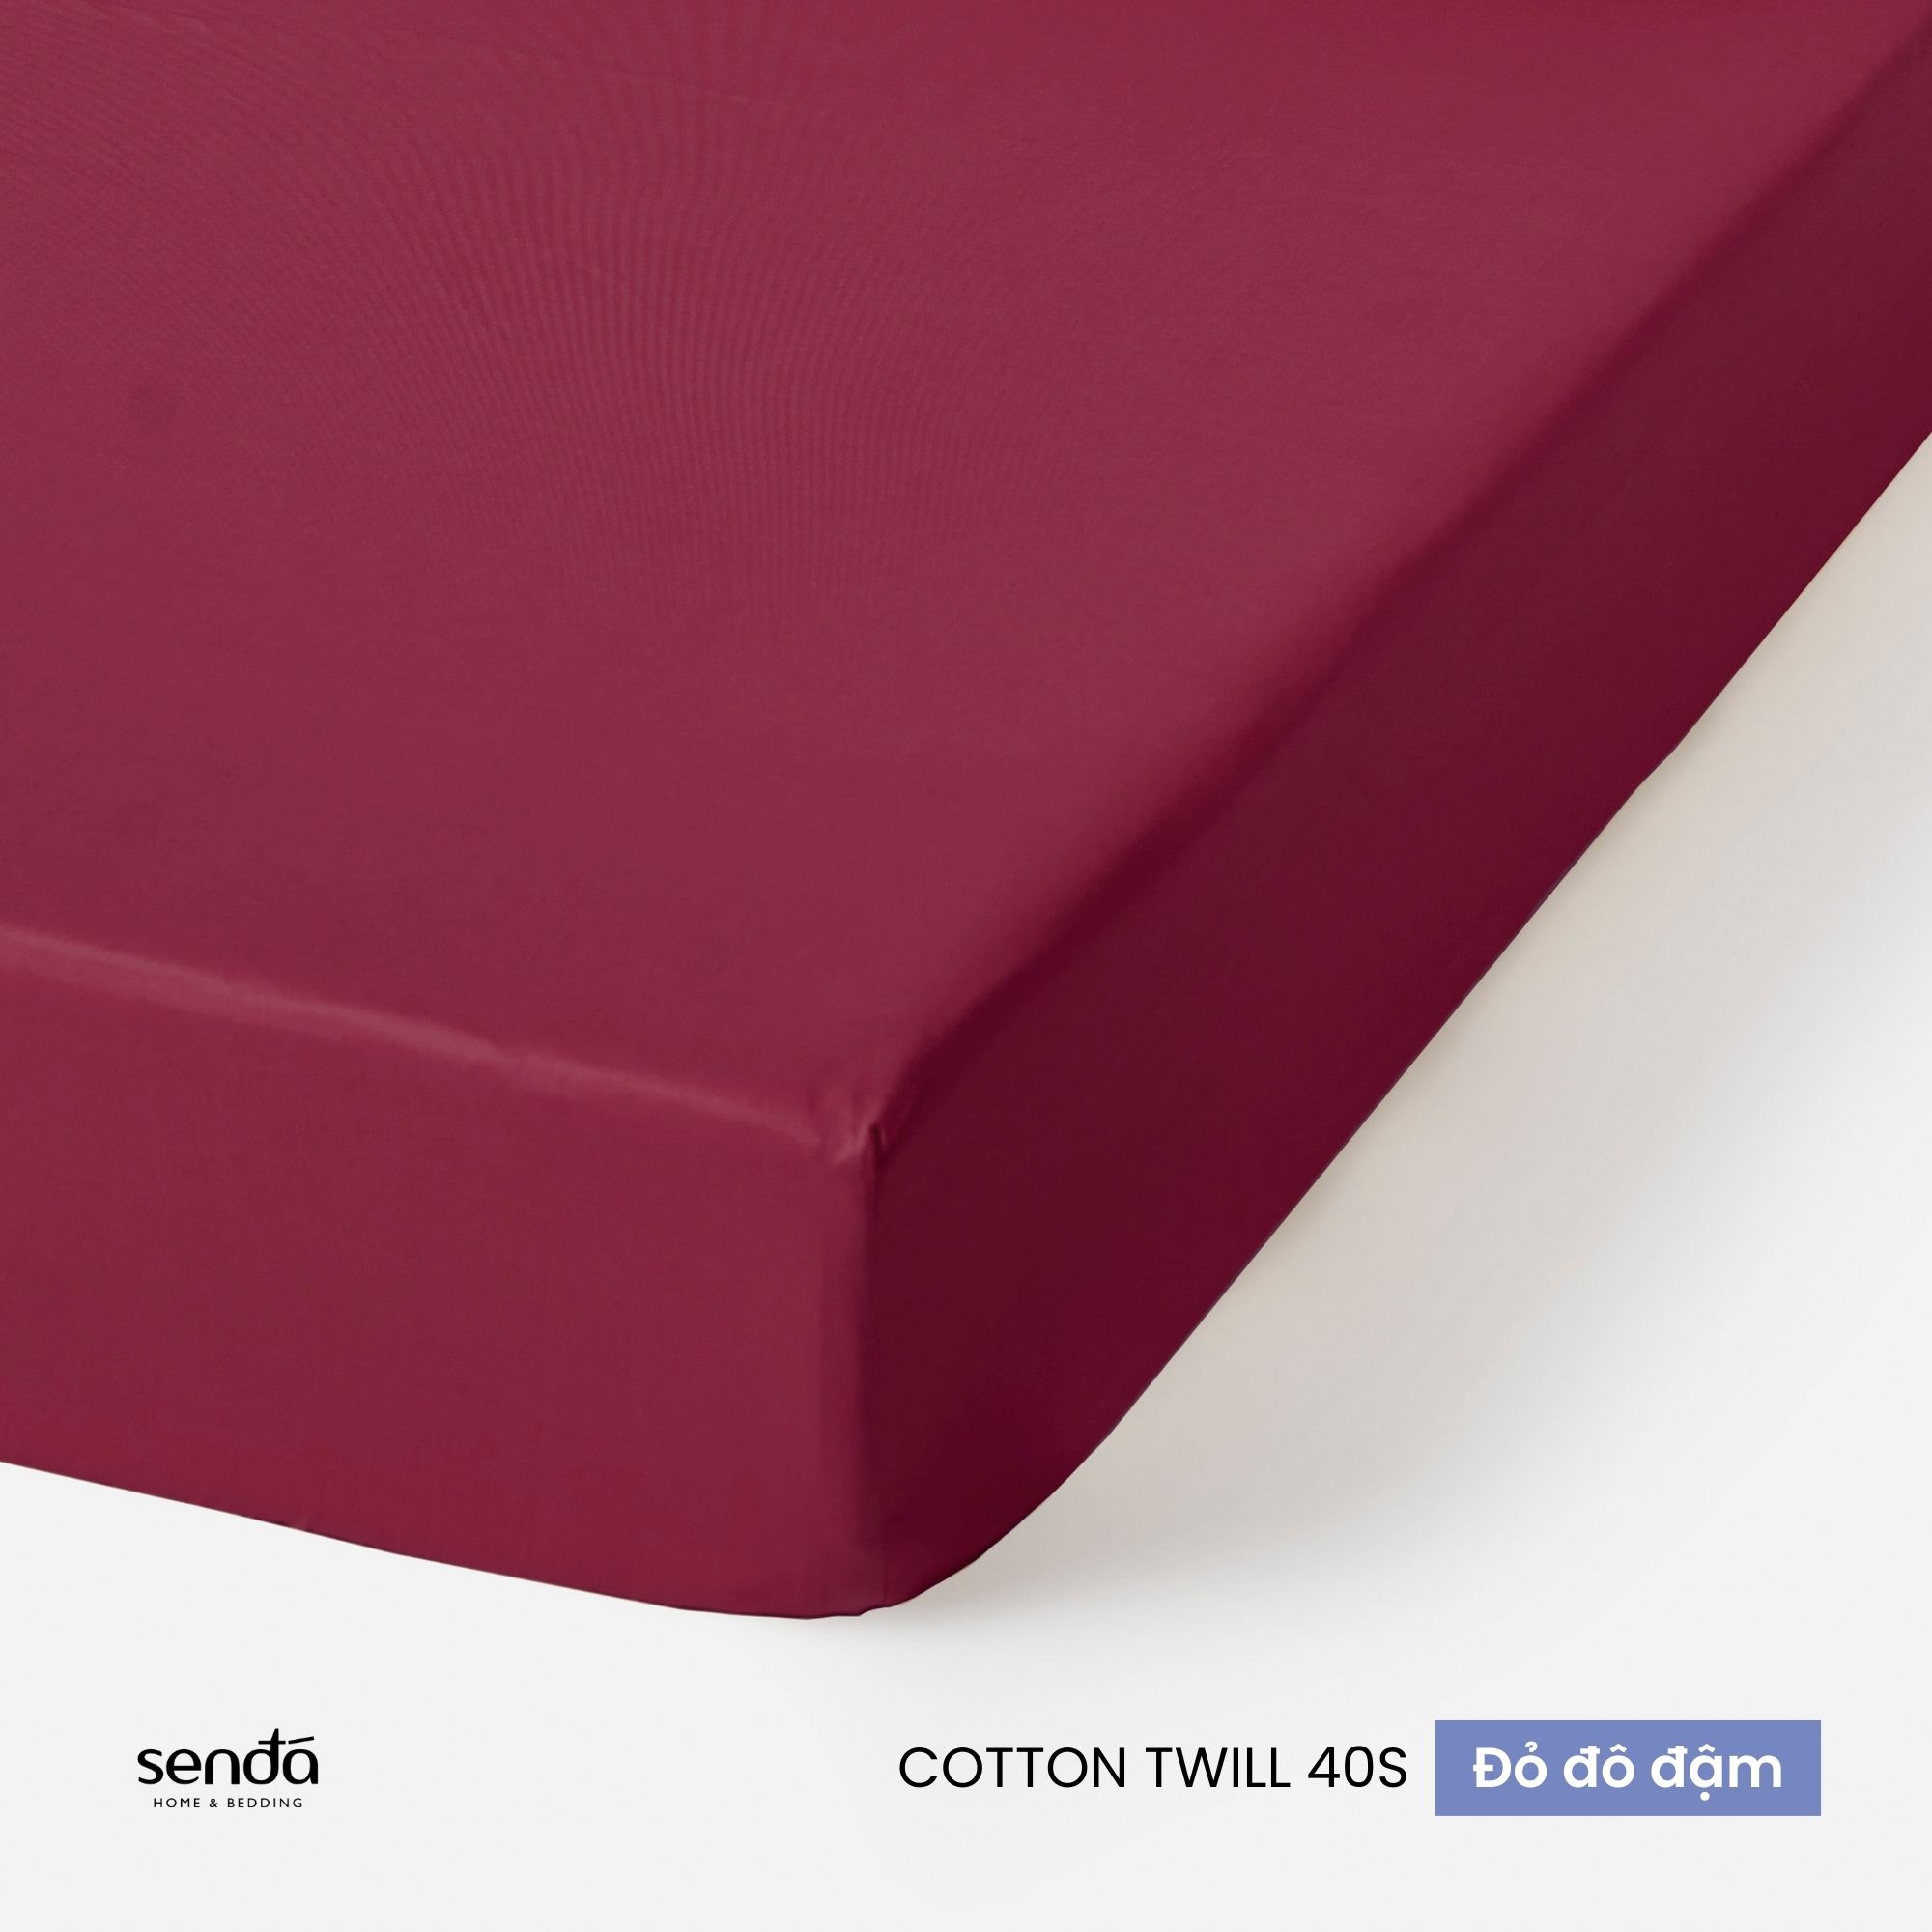 Ga giường 1m6x2m Cotton Twill Hàn Quốc Sen Đá Home Bedding cao cấp trơn màu, drap bo chun lụa trải nệm, ra đệm 1m6 x 2m